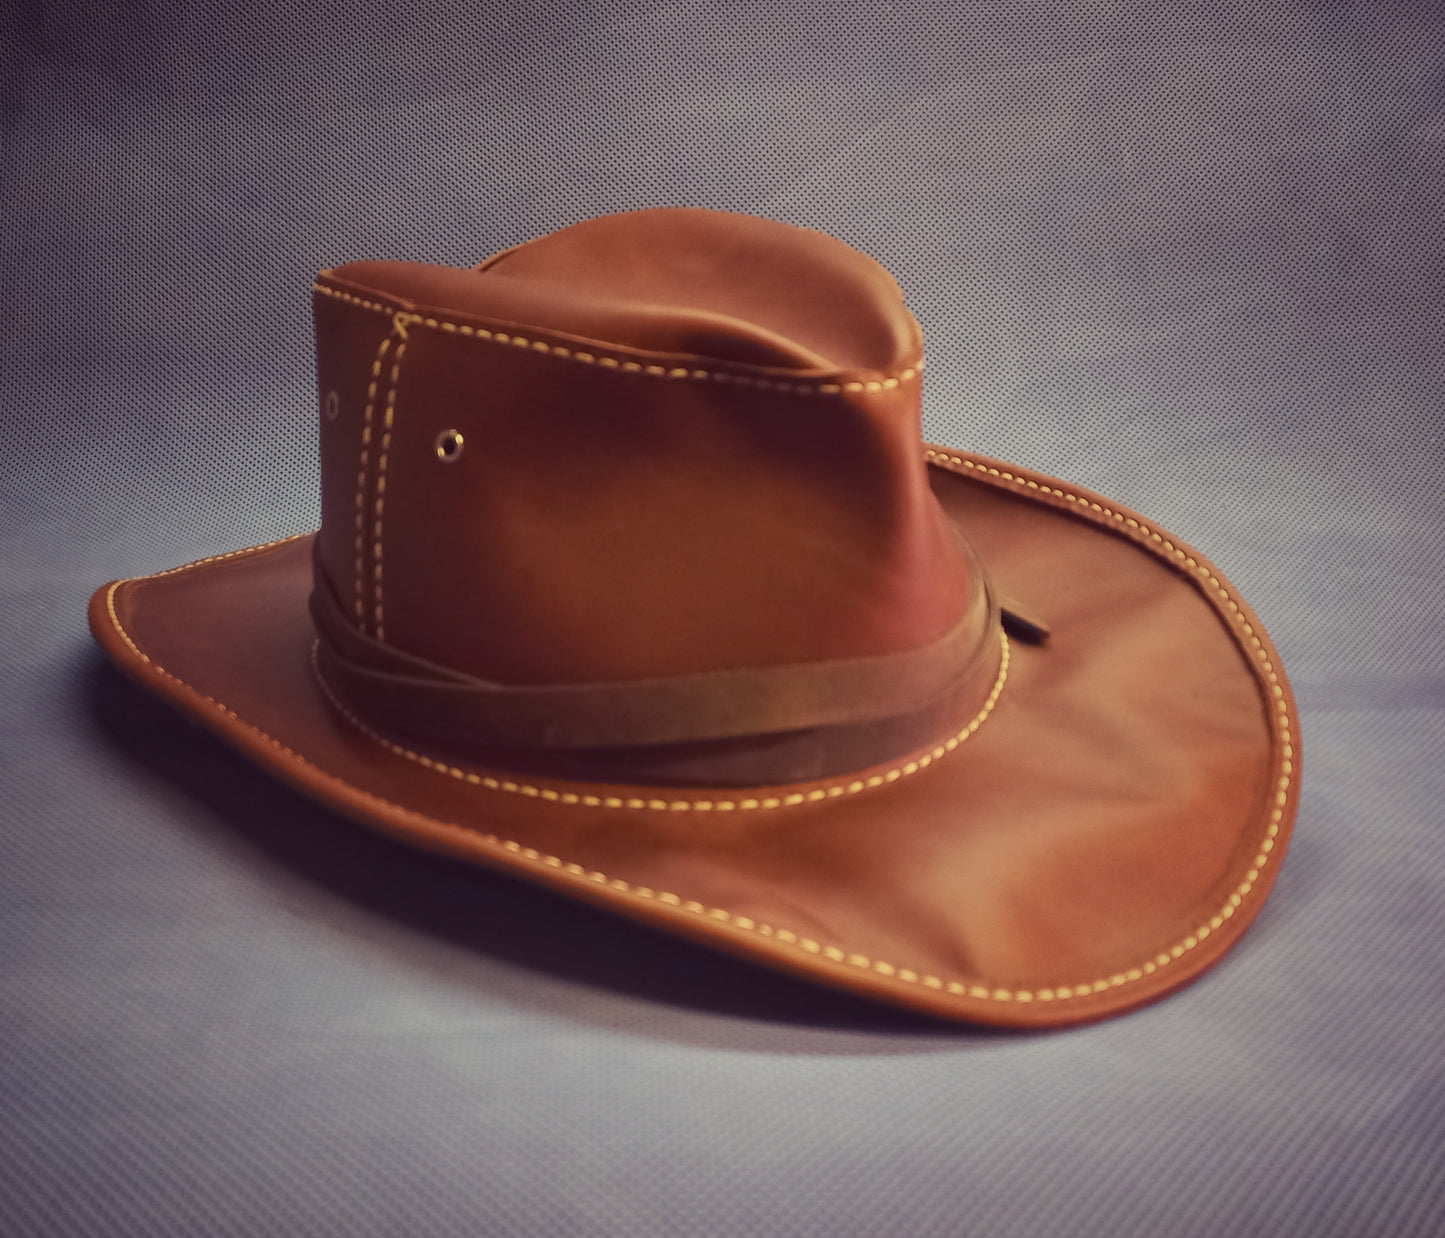 Jacques Cowboy Hat